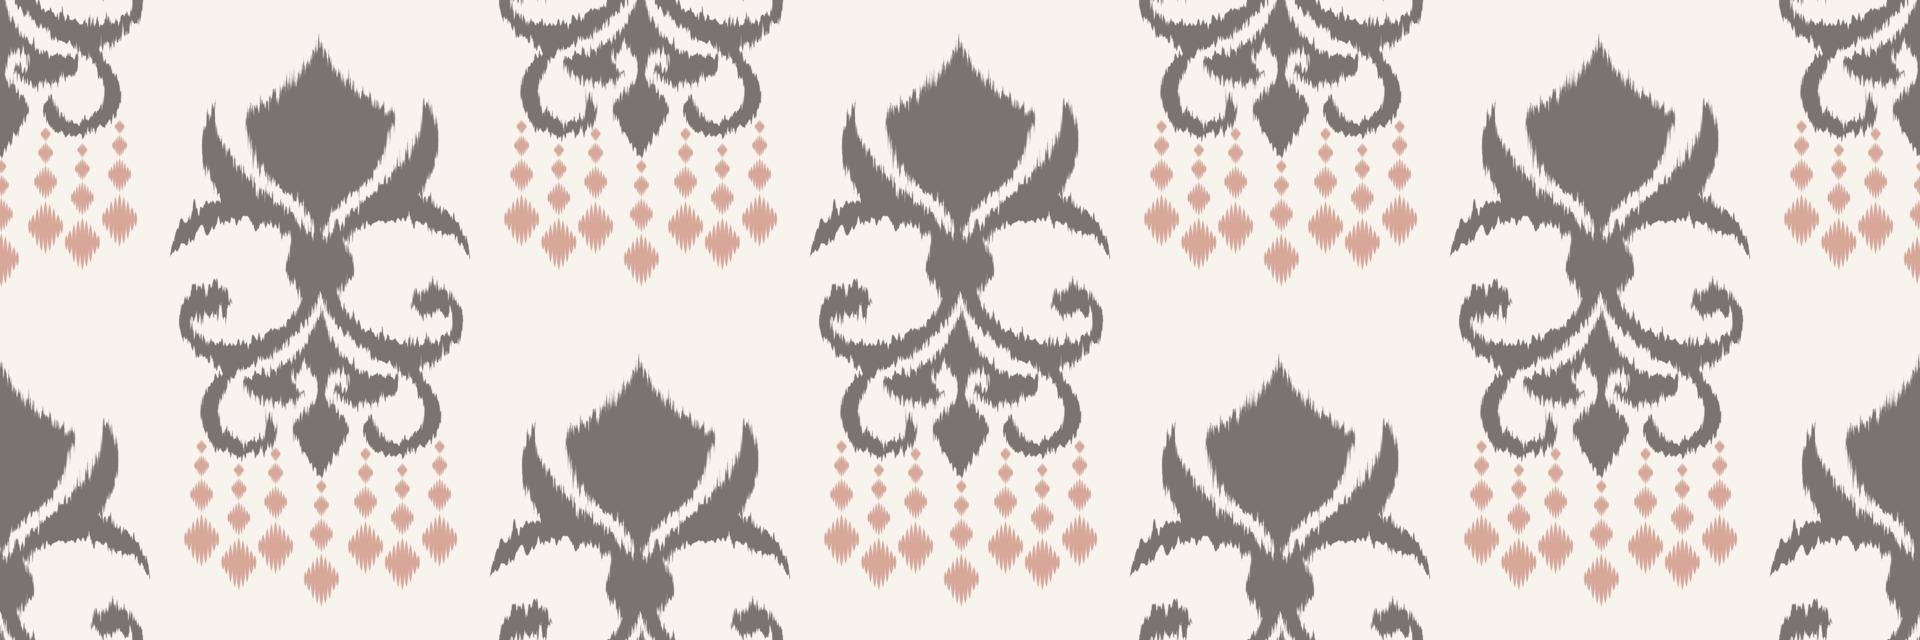 Ikat Damask Scandinavian embroidery, ikat seamless tribal Aztec, Motif Vector Digital textile Asian Design ancient art for Prints Fabric saree Mughal Swaths texture Kurti Kurtis Kurtas